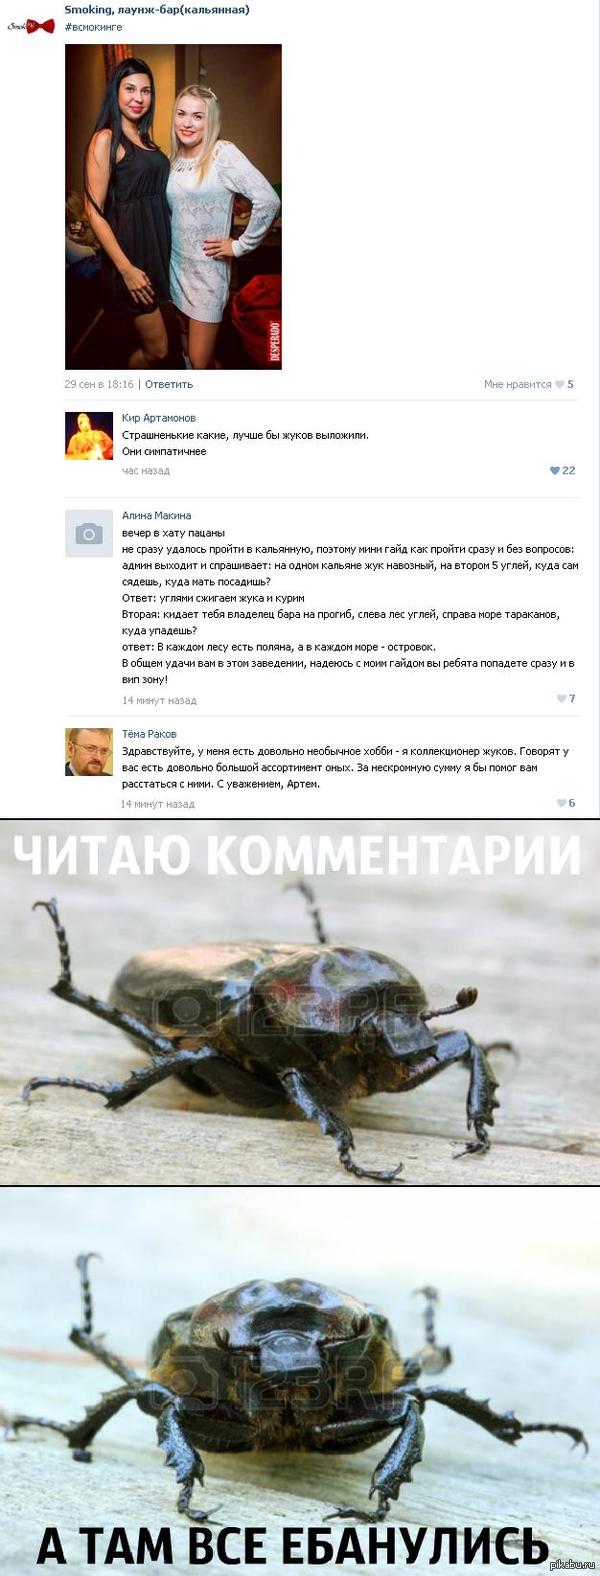      :D      : <a href="http://pikabu.ru/story/vashe_mnenie_ochen_vazhno_dlya_nas_3777824">http://pikabu.ru/story/_3777824</a>  P.S. ,       xD